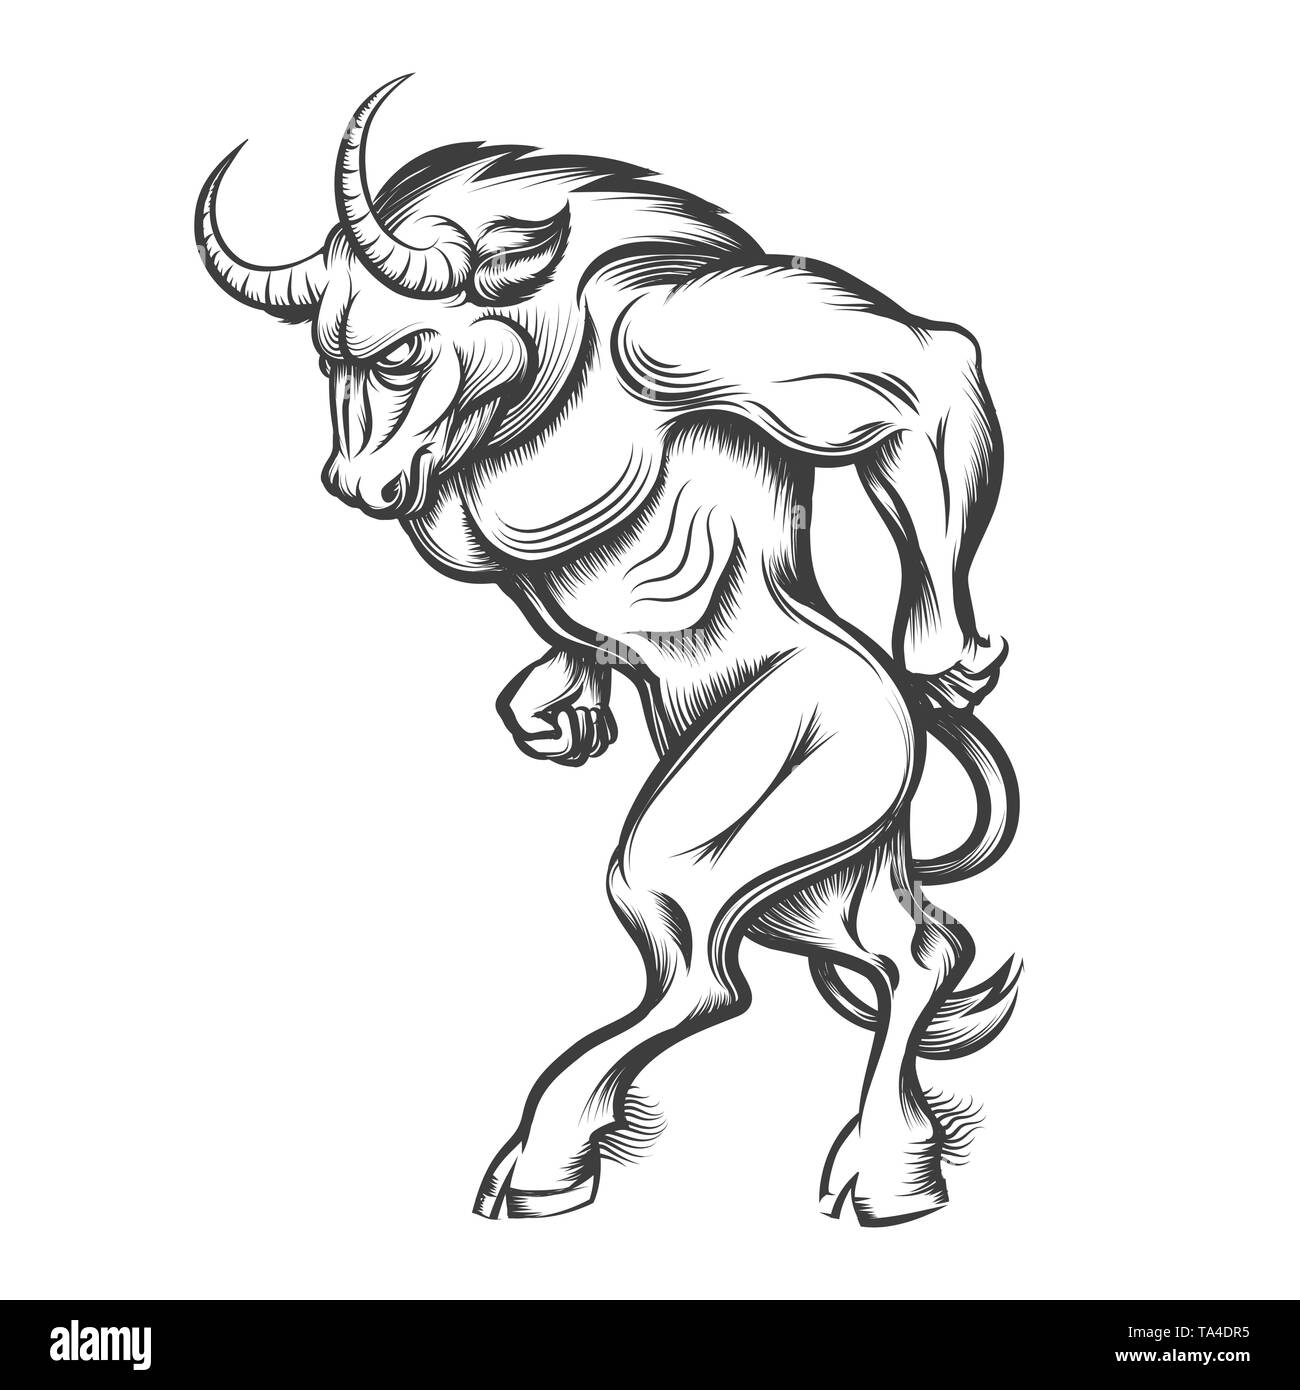 Le grec ancien monstre mythologique Minotaure dans leur gravure sur blanc. Vector illustration. Illustration de Vecteur